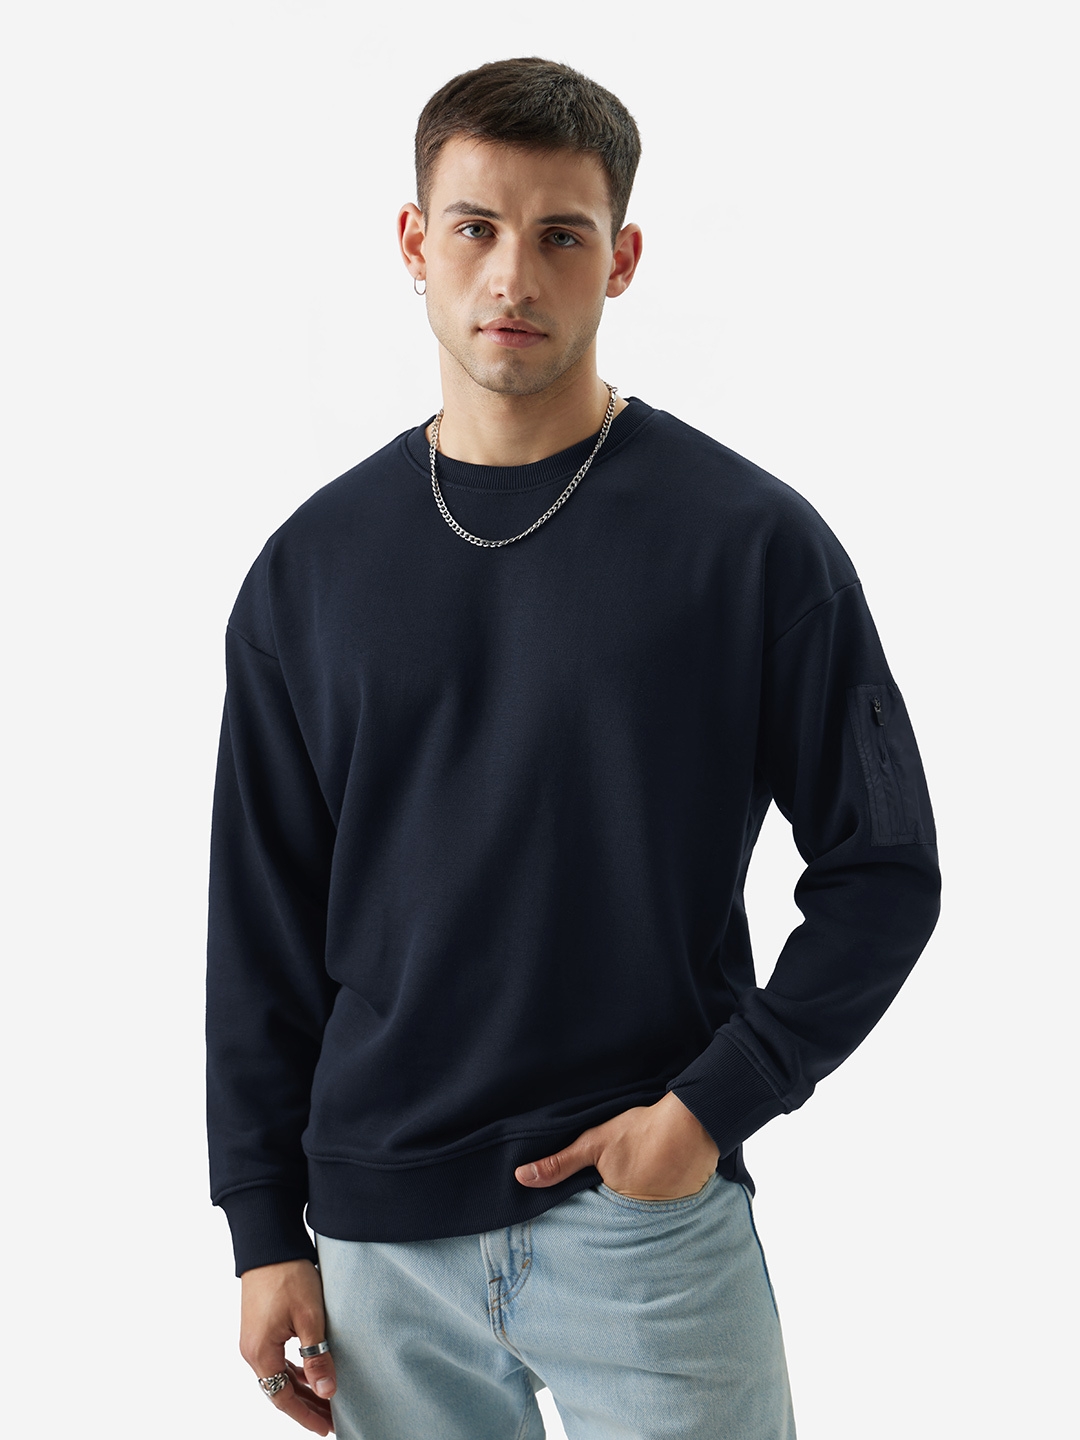 Men's TSS Originals: Riveria Men's Oversized Sweatshirts